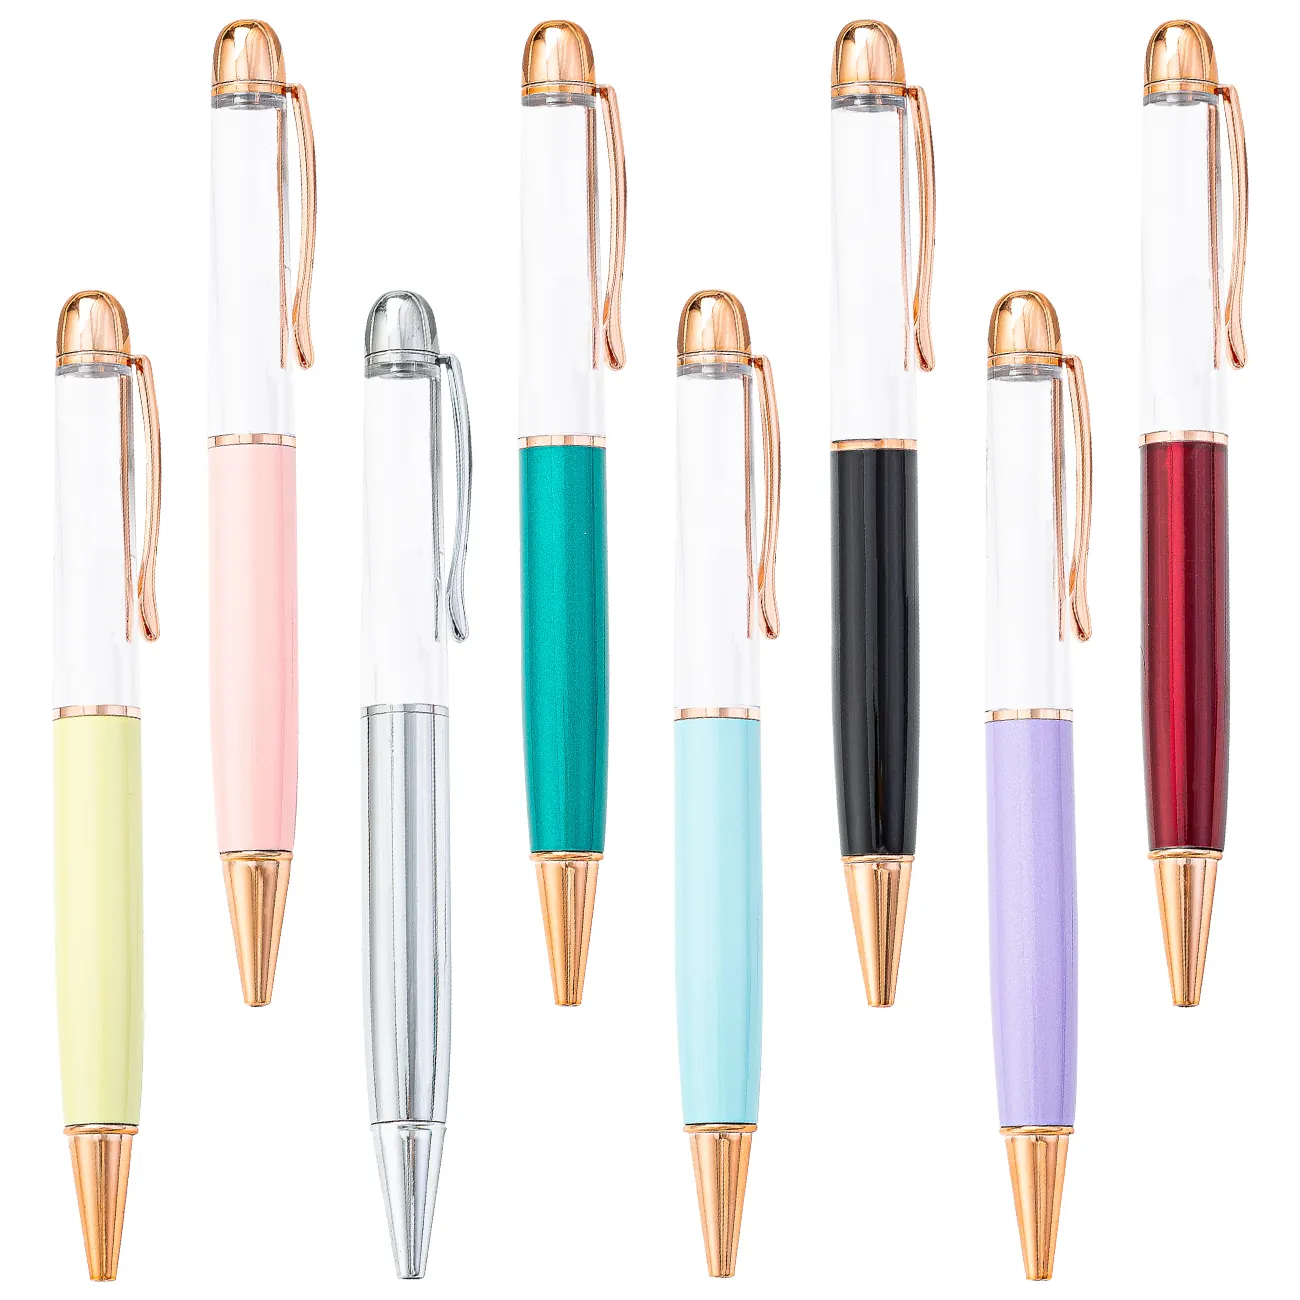 יפן סיטונאי חדש עיצוב קידום מכירות מתכת כדורי עט גדול יותר גודל שומן ריק DIY עט